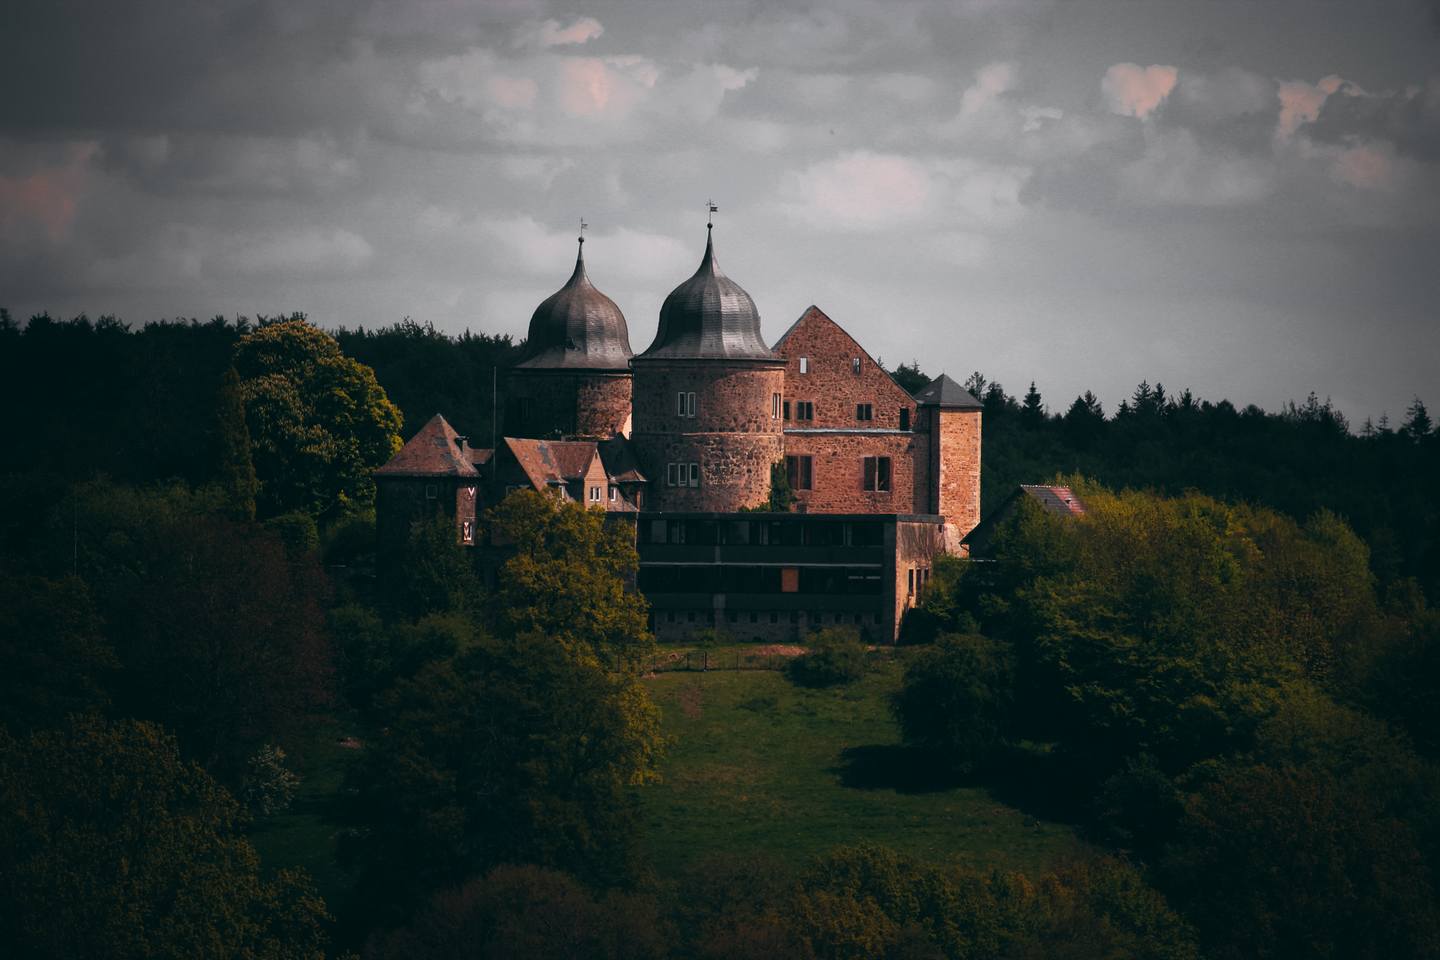 Panorama-Aufnahme der Sababurg. Zu sehen ist gesamte Burg mit ihren Türmen und der Waldlandschaft drumherum.